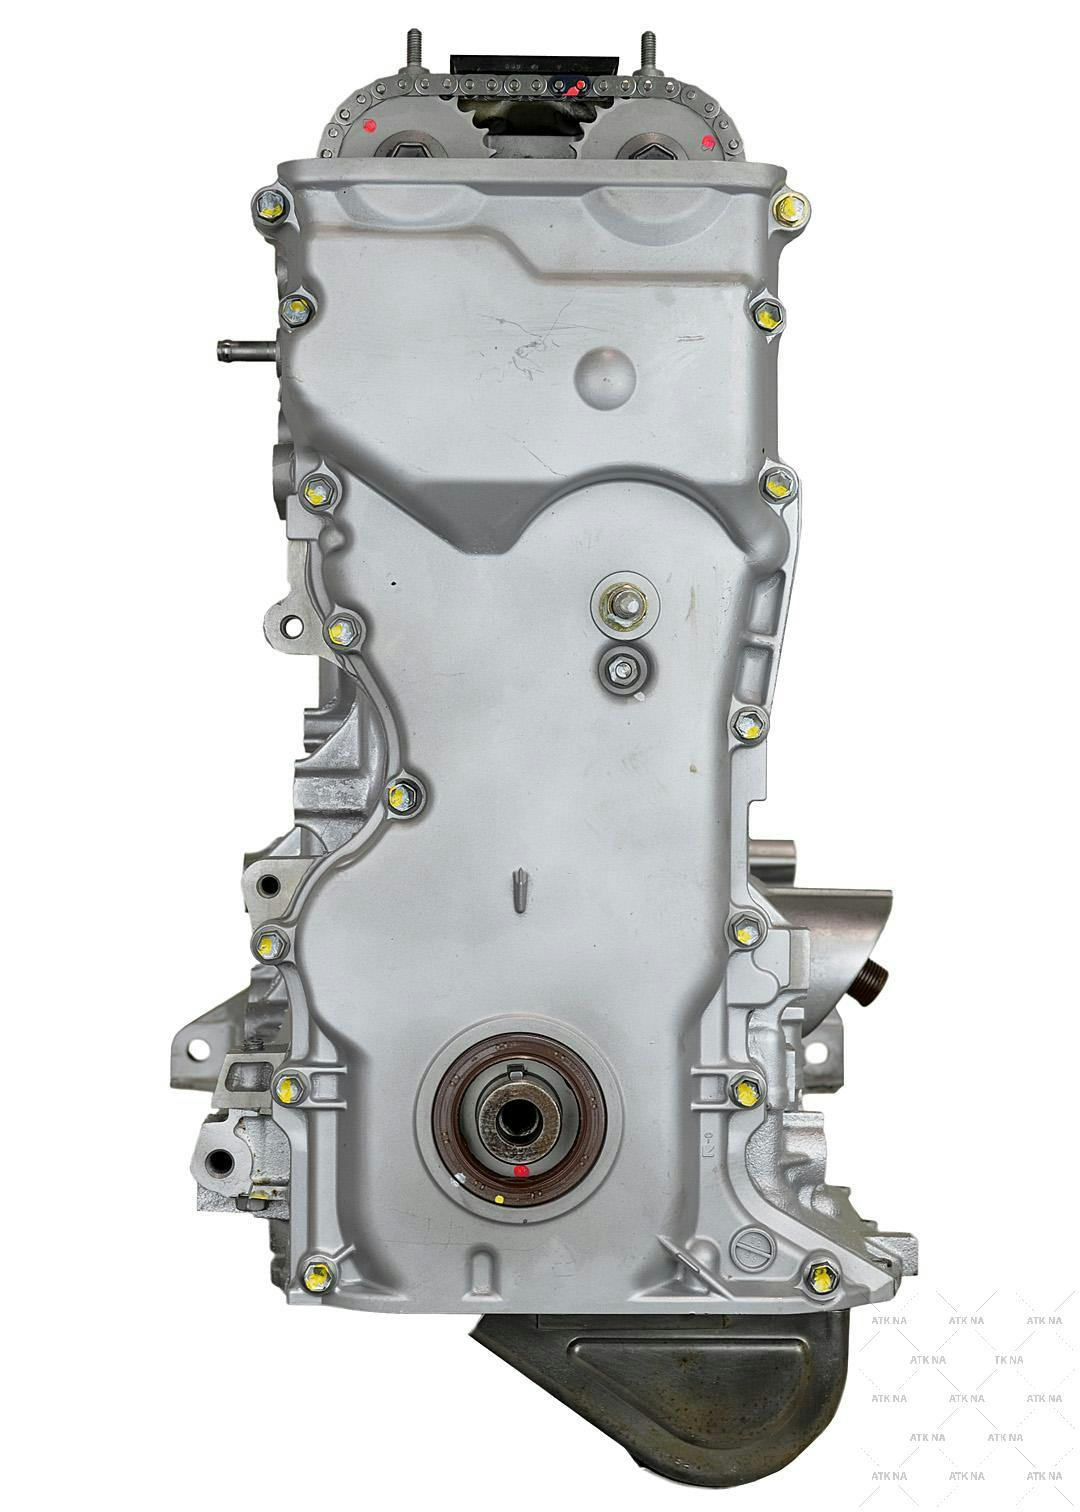 2L Inline-4 Engine for 2007-2009 Suzuki SX4